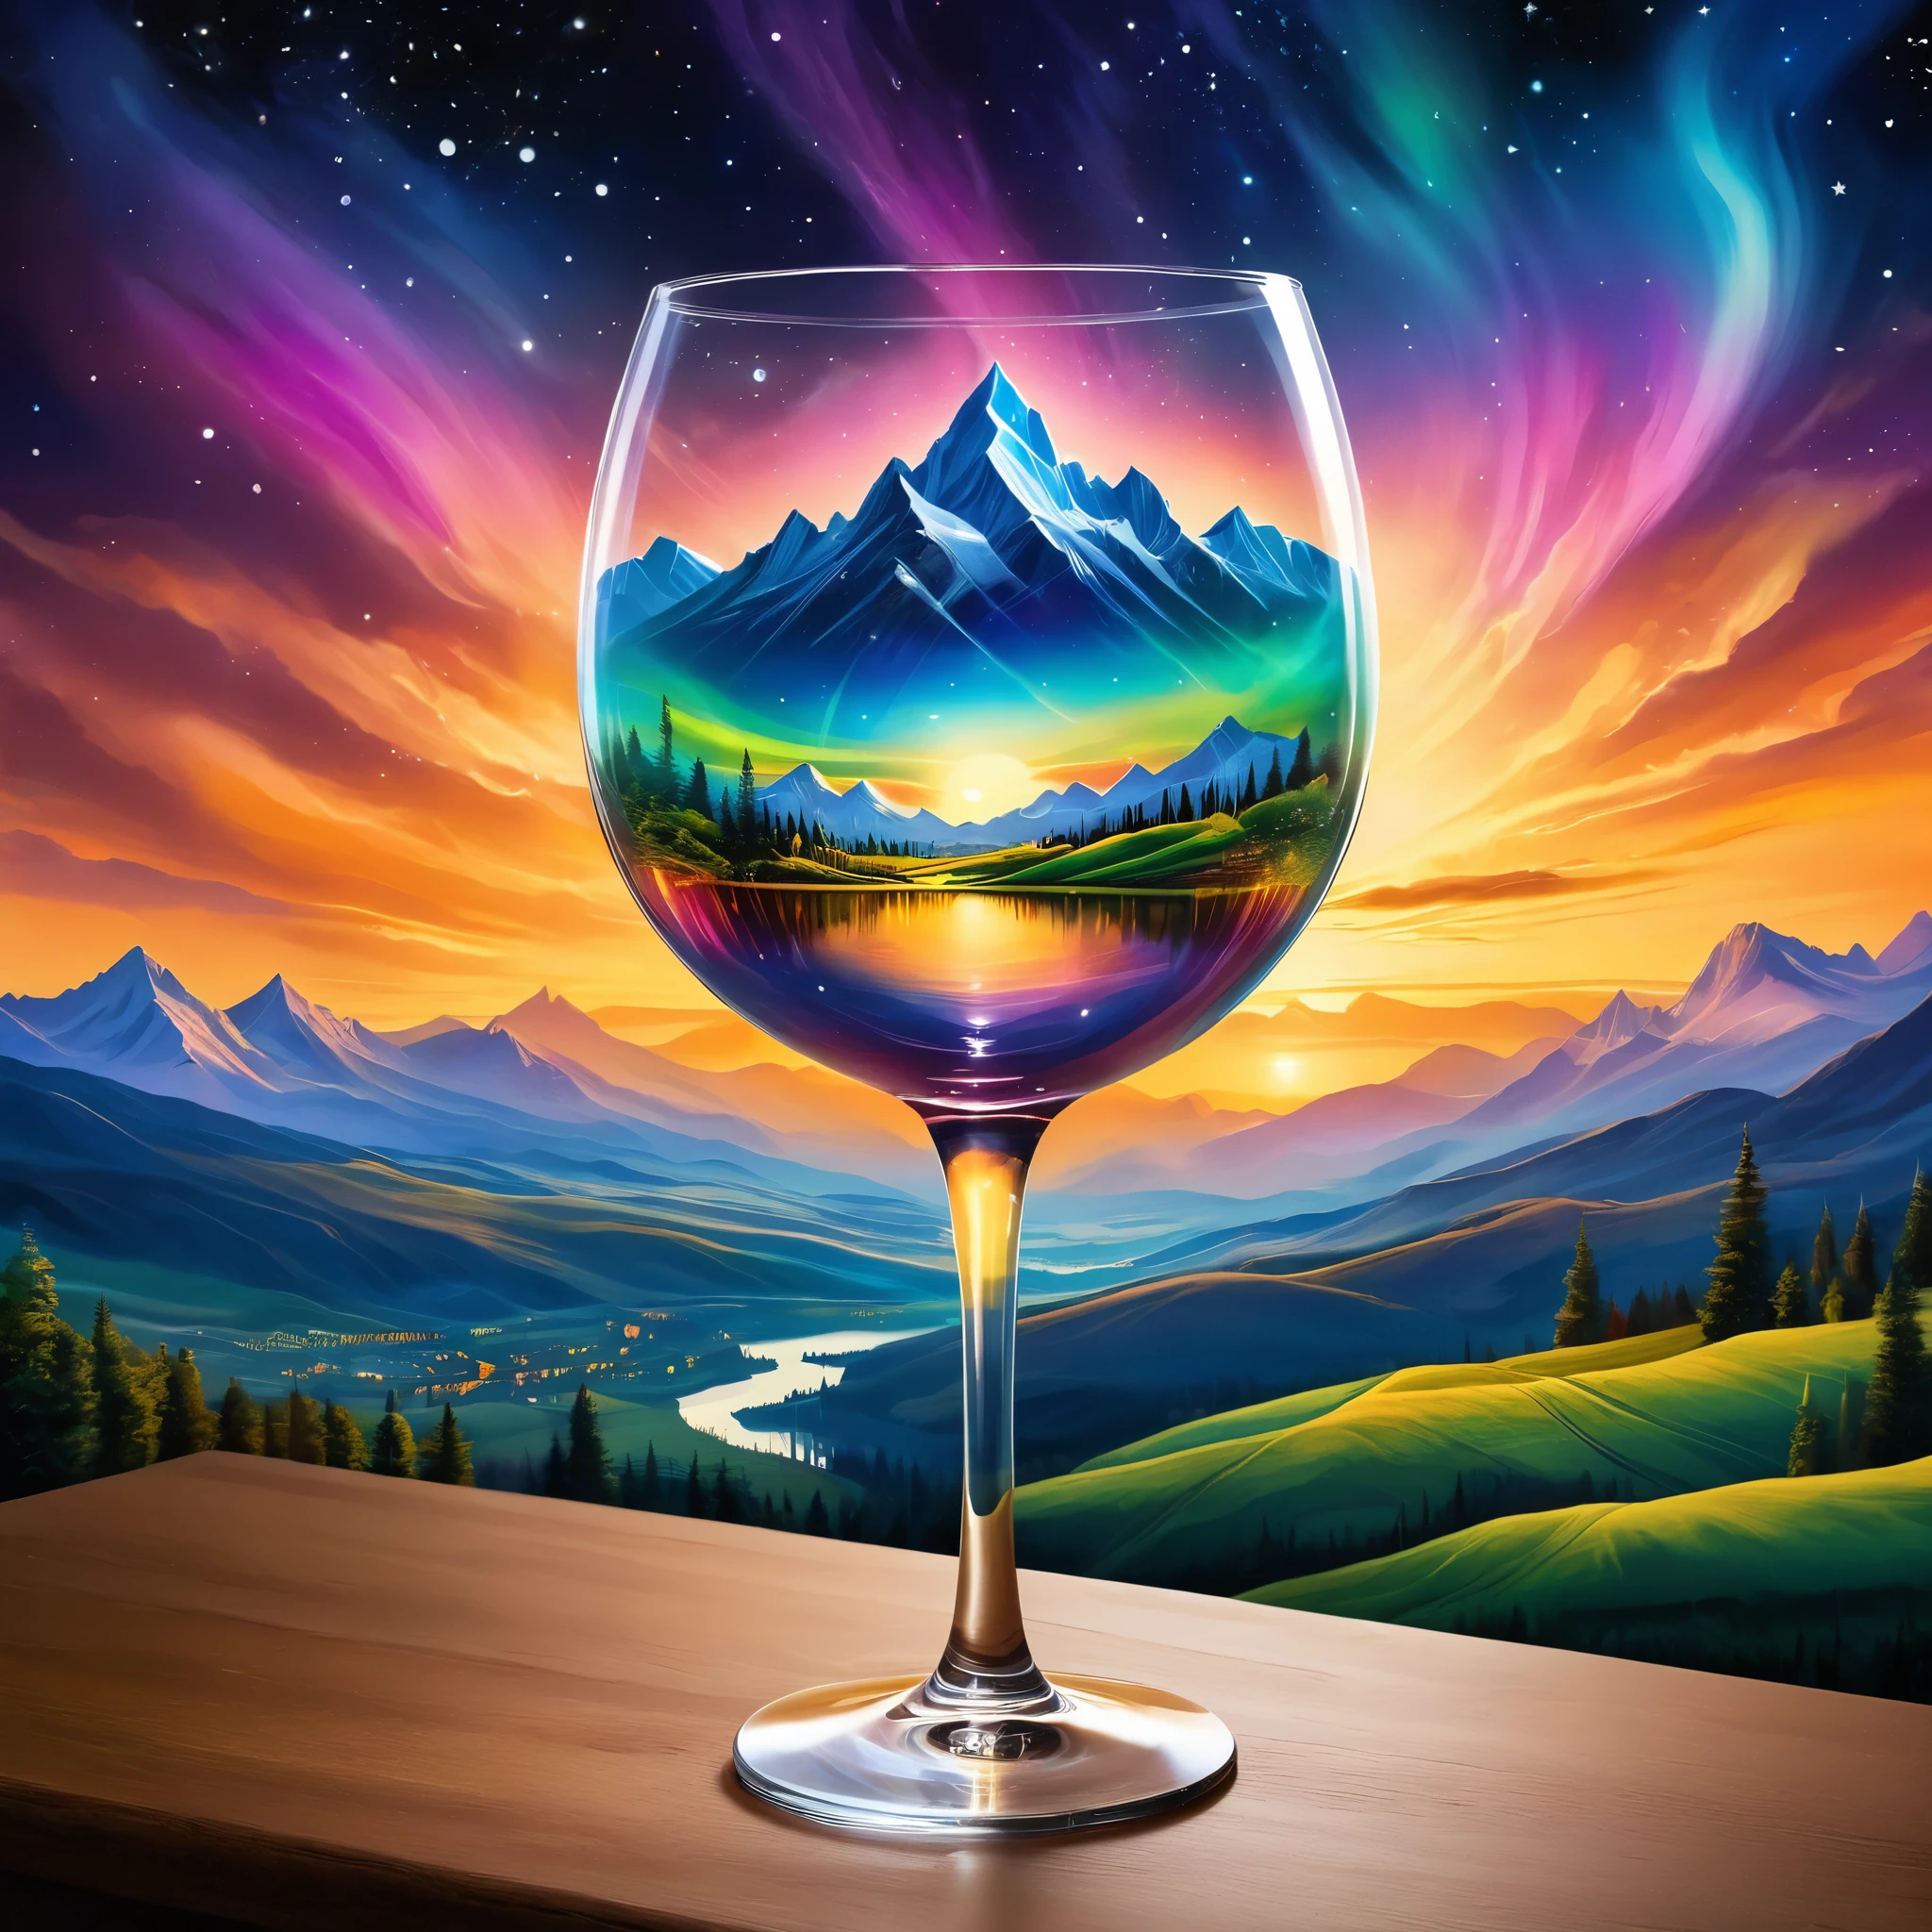 ワイングラスの中に天体シーンを創り出す, 山々とオーロラの空が広がるシュールな風景を描いた. 背景には輝く夕日と街並みが描かれている. スタイルは幻想的な要素を持つファンタジーであるべきである. 超リアルな写真, 非常に鮮やかな色, 16k